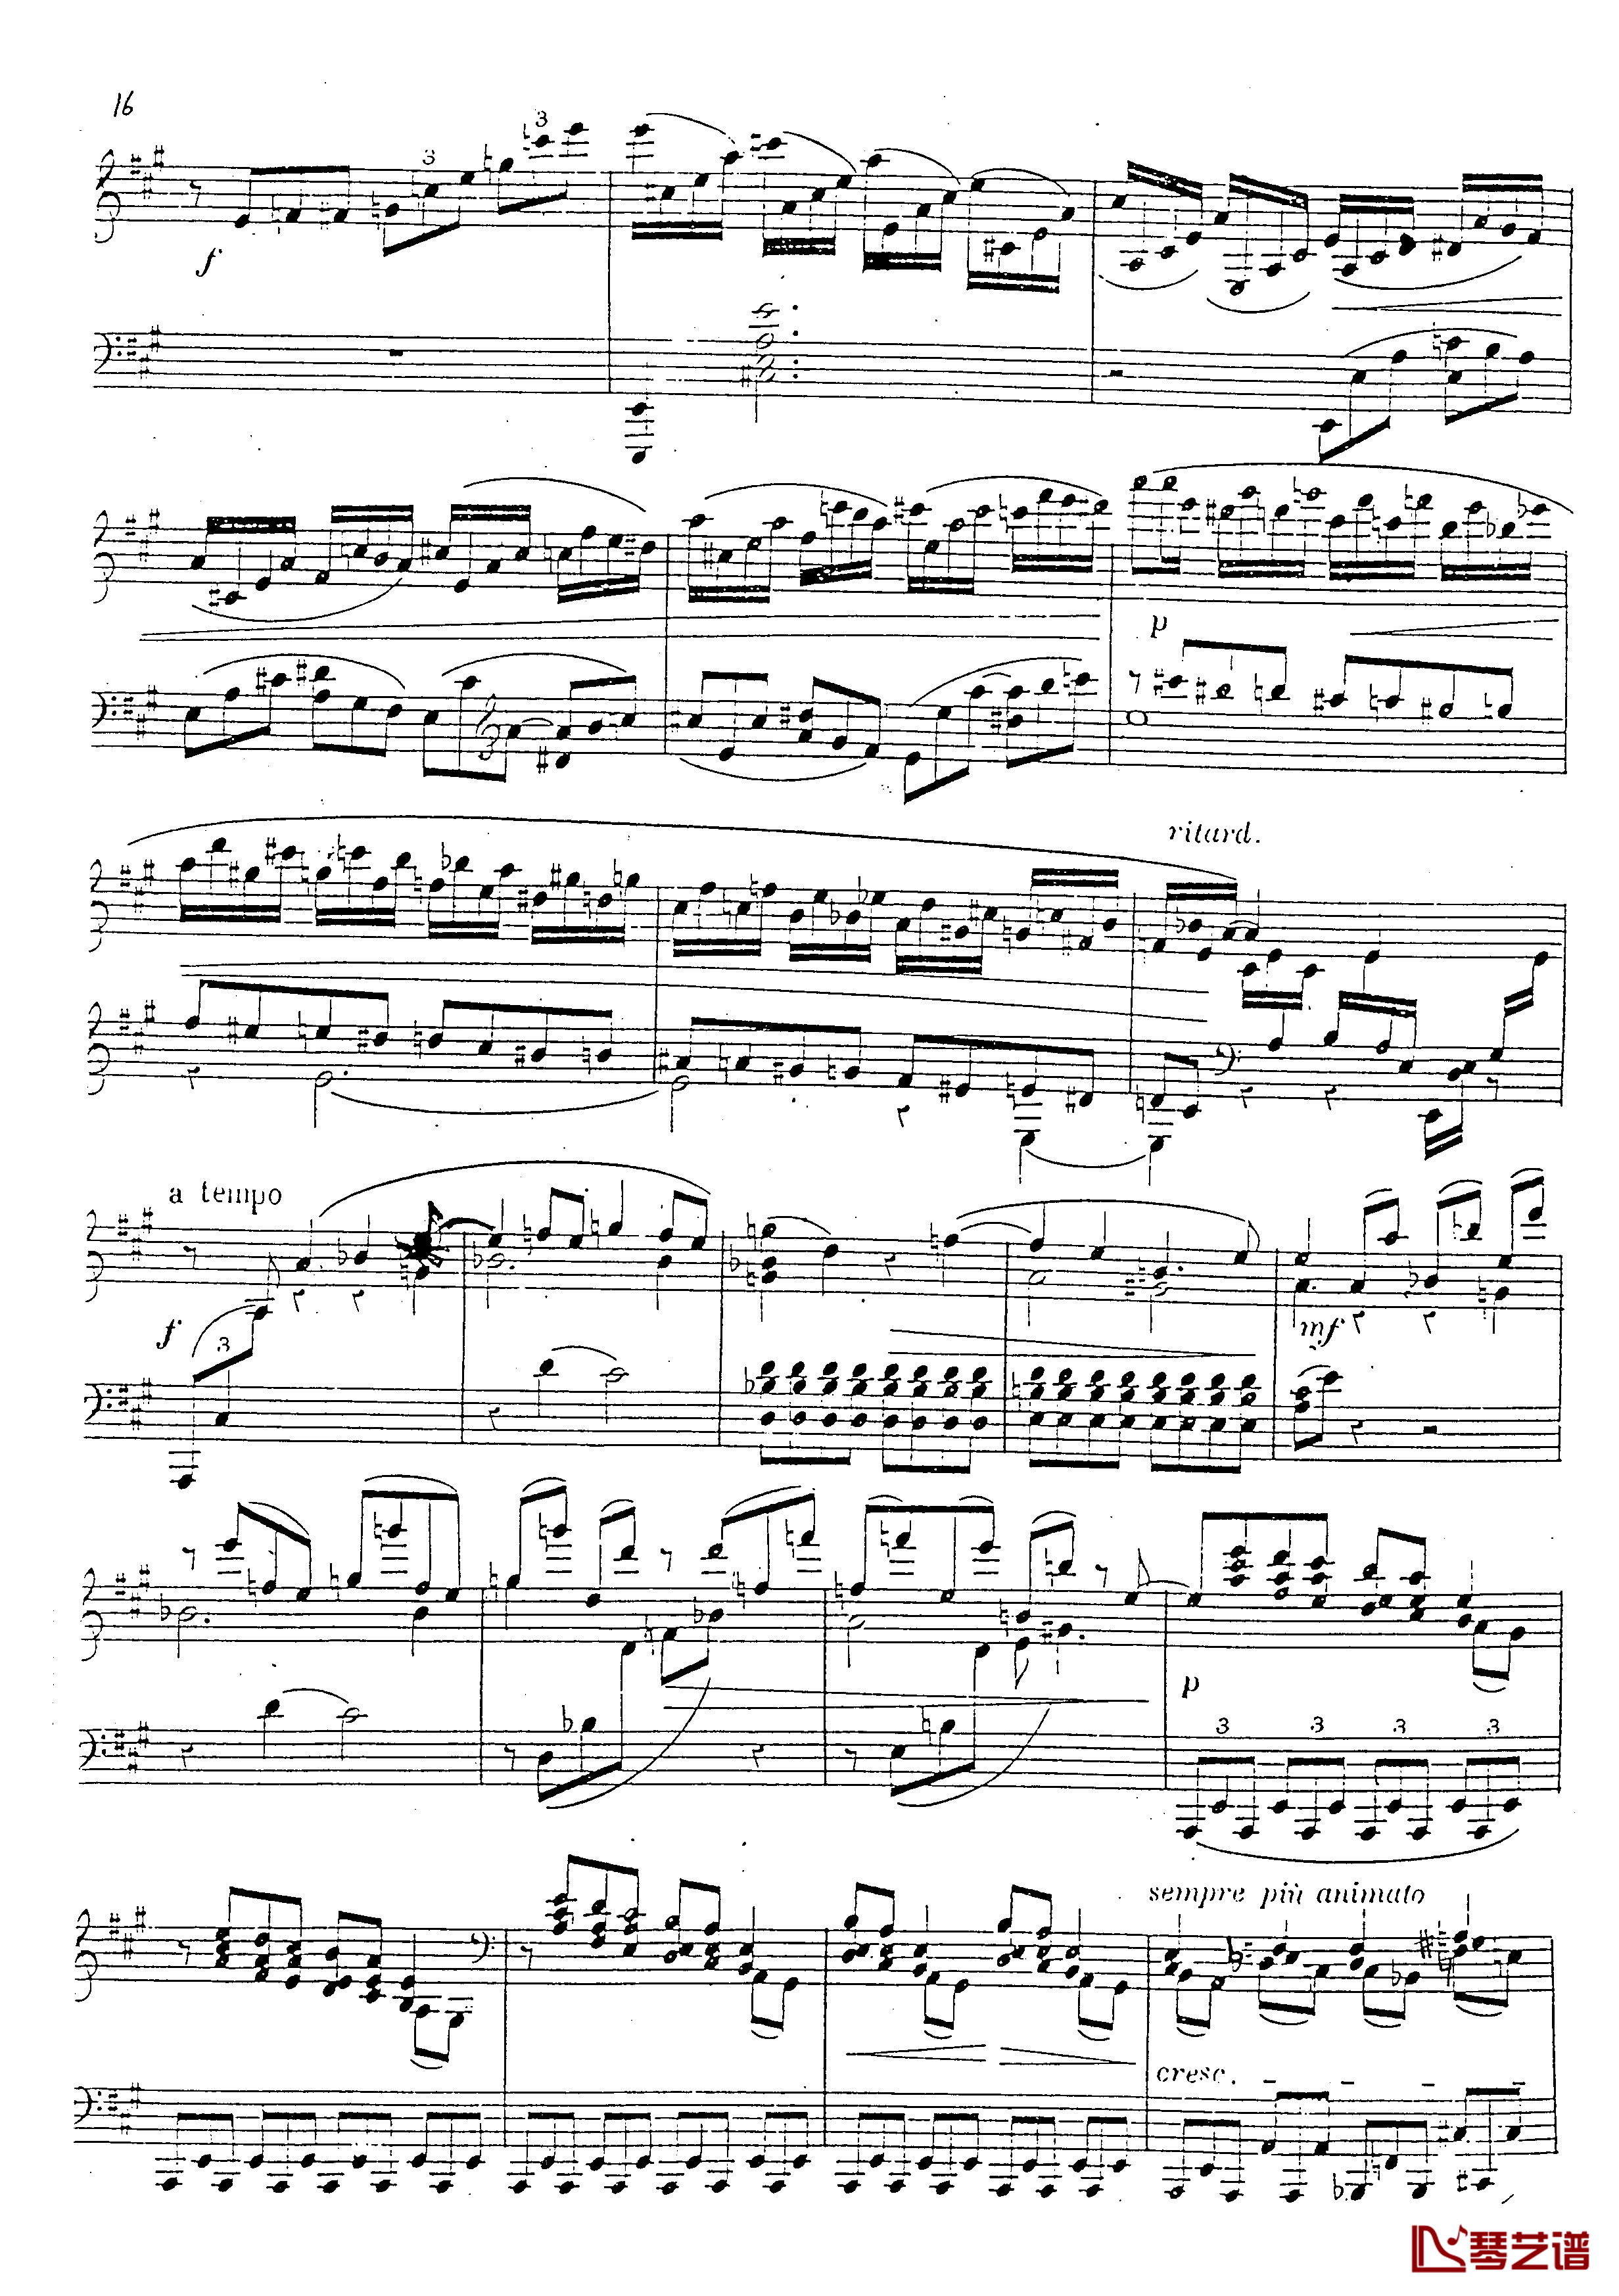 a小调第四钢琴奏鸣曲钢琴谱-安东 鲁宾斯坦- Op.10017